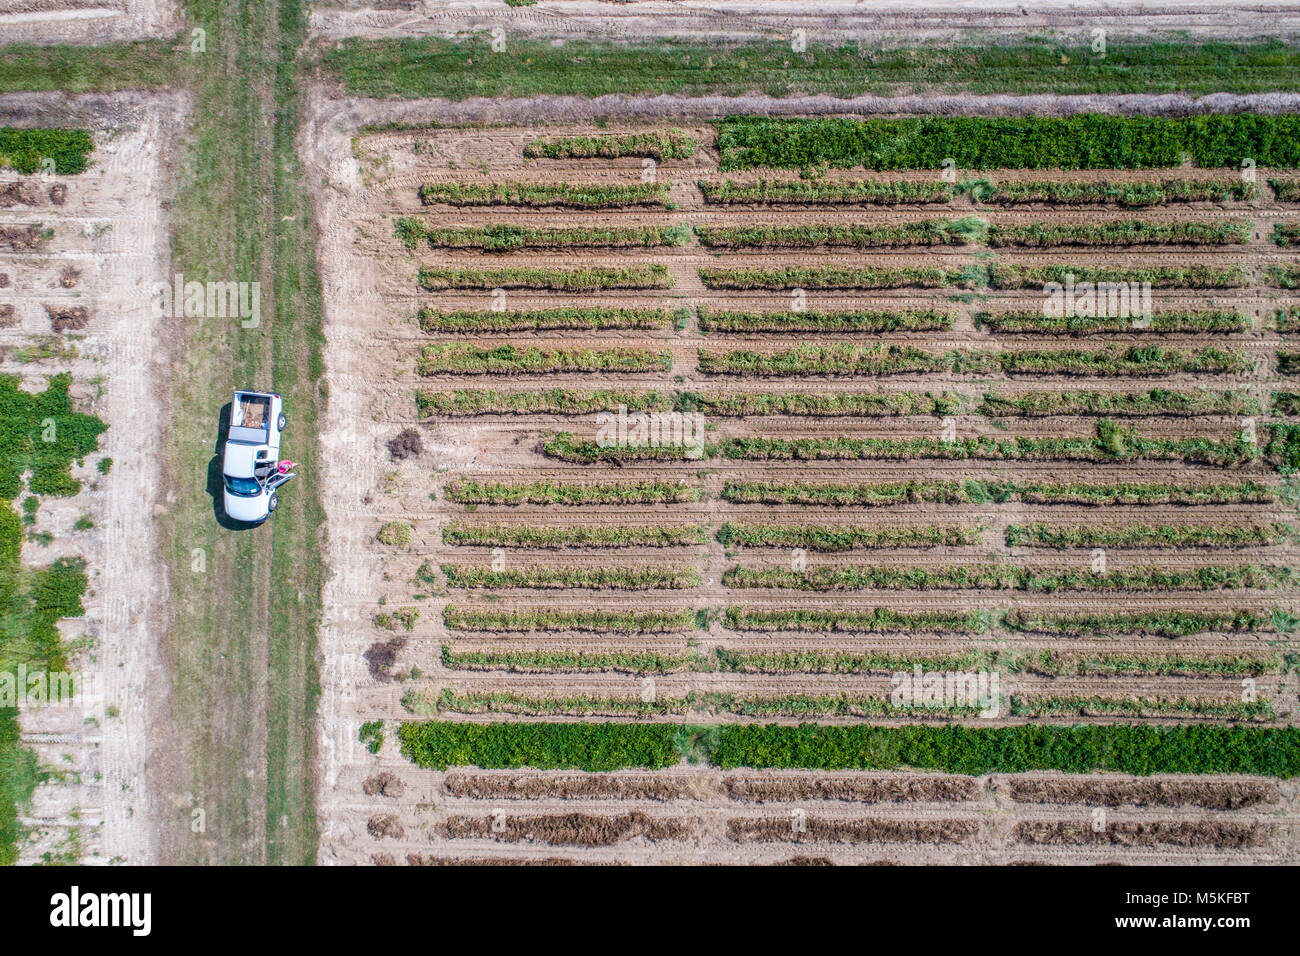 Direkt hinunter auf der Suche nach ordentlichen Reihen von Erdnuss Kulturpflanzen und eine einzelne weiße Lkw im Leerlauf im Feld, Tifton, Georgia. Stockfoto